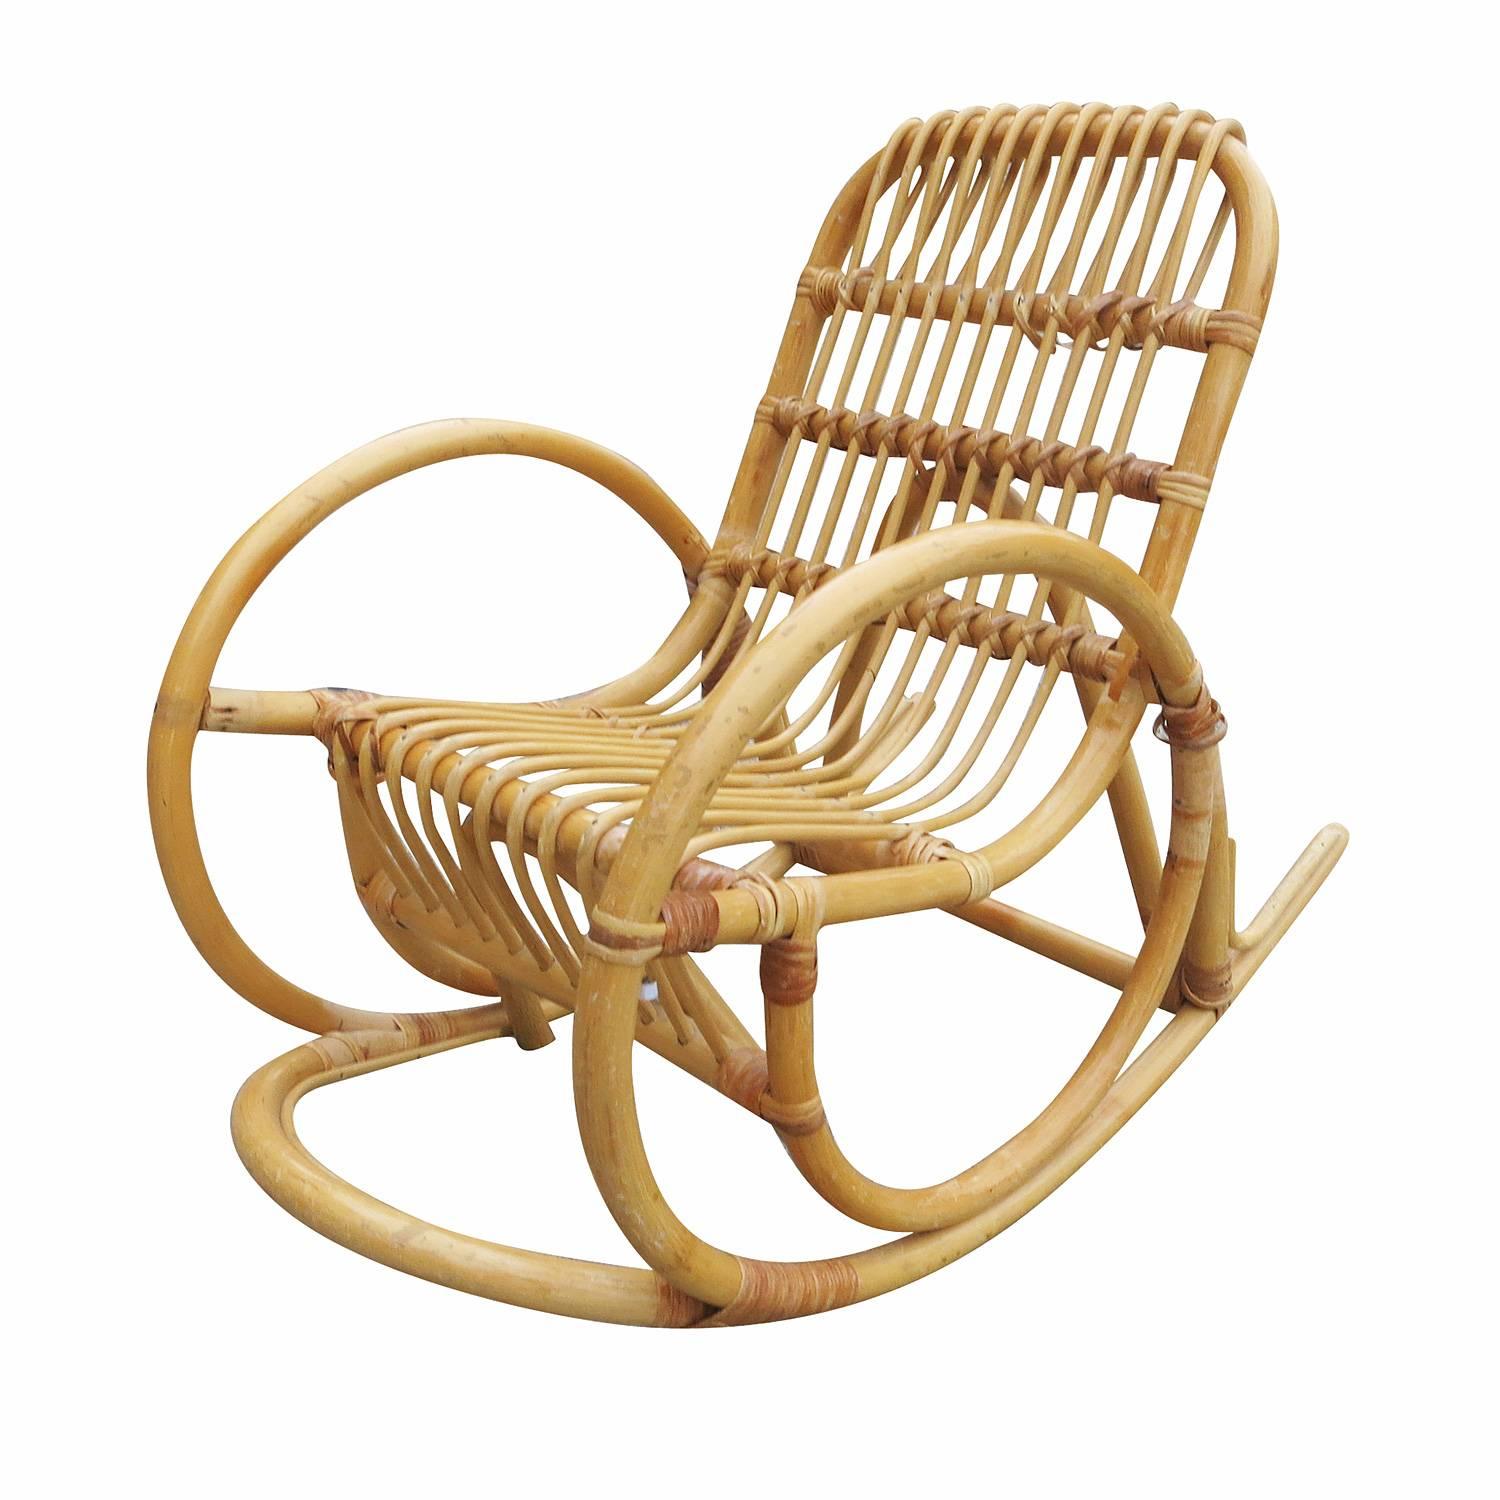 Une rare chaise à bascule en rotin, inspirée de Paul Frankl, avec un bras en forme de serpent et un siège en rotin en forme de bâton. 

Restauré professionnellement selon les spécifications d'origine.

Tous les meubles en rotin, en bambou et en